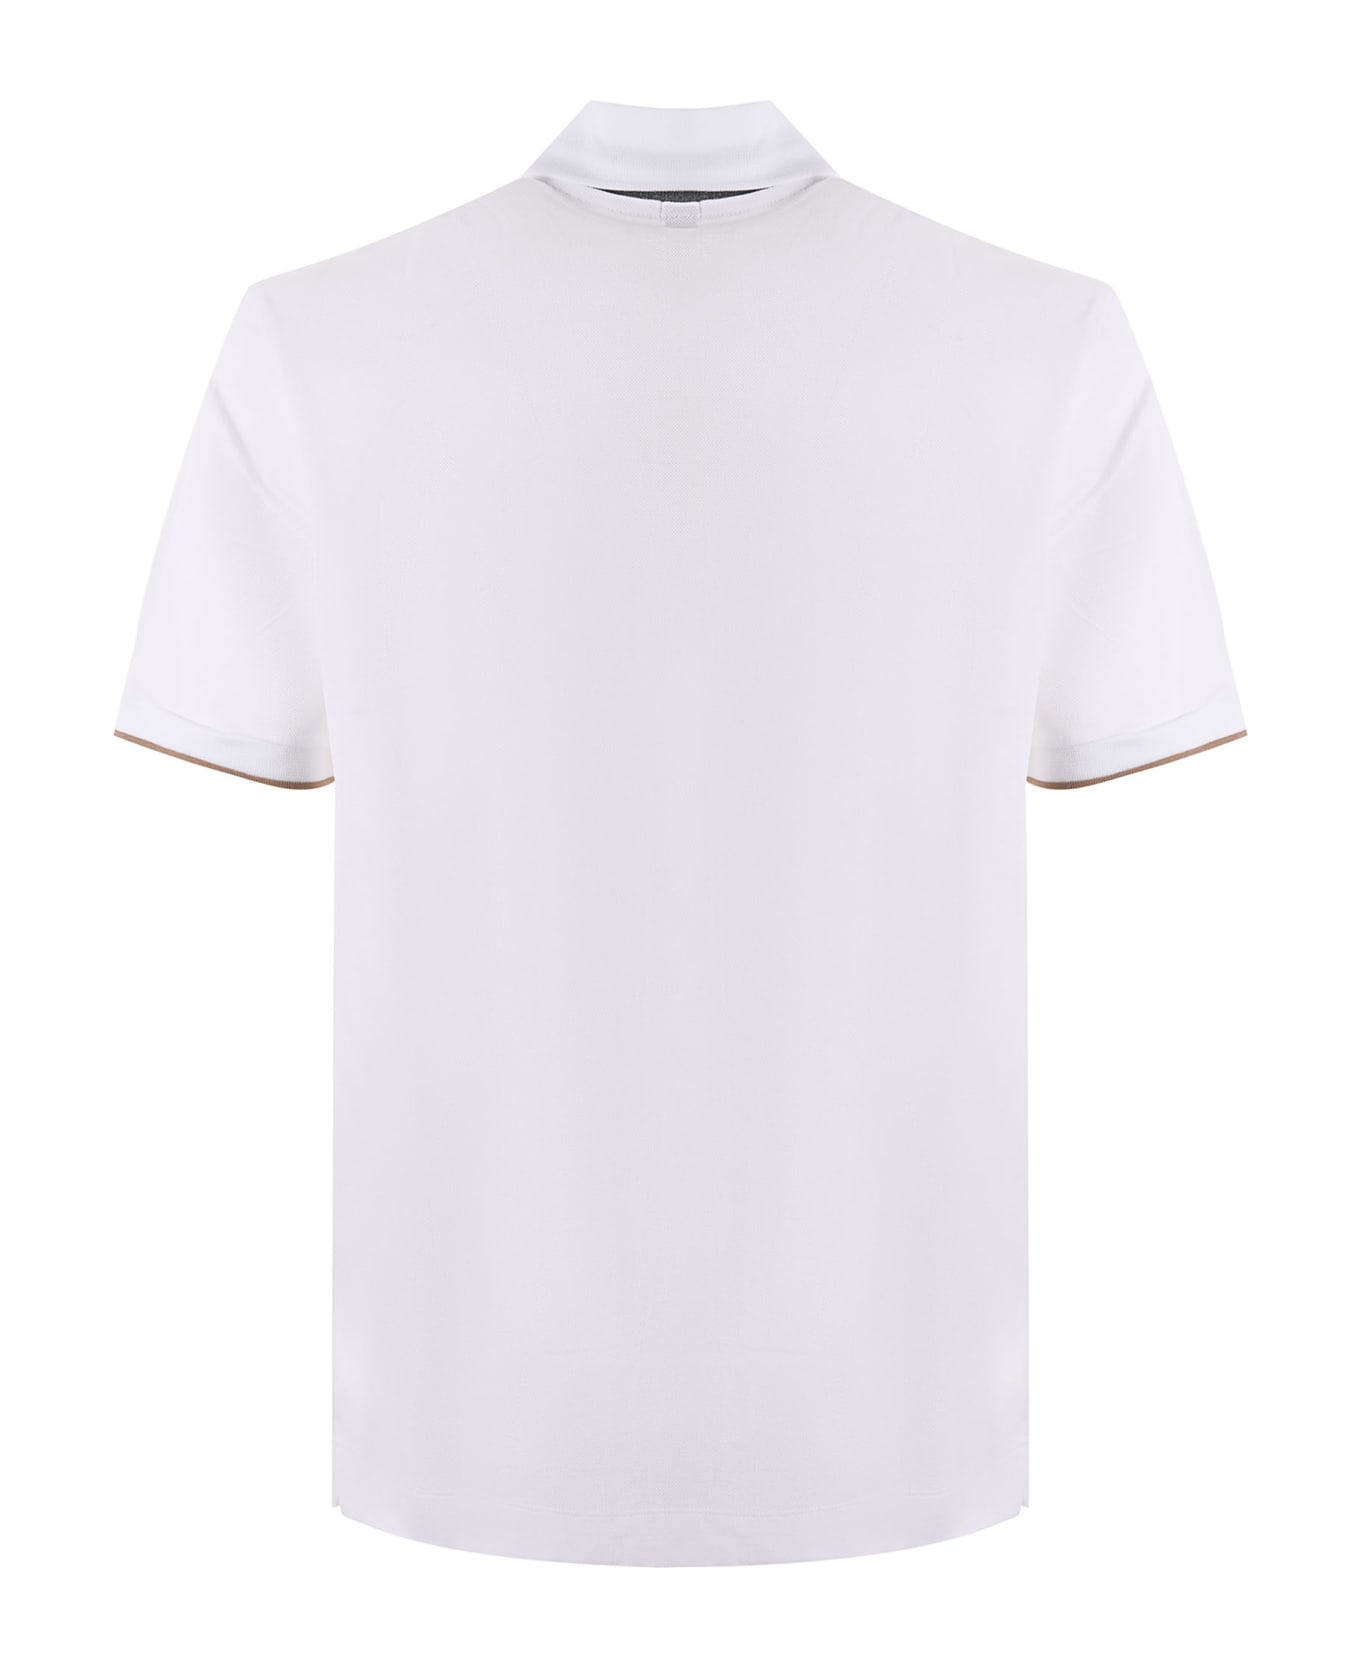 Hugo Boss Boss Polo Shirt - Bianco